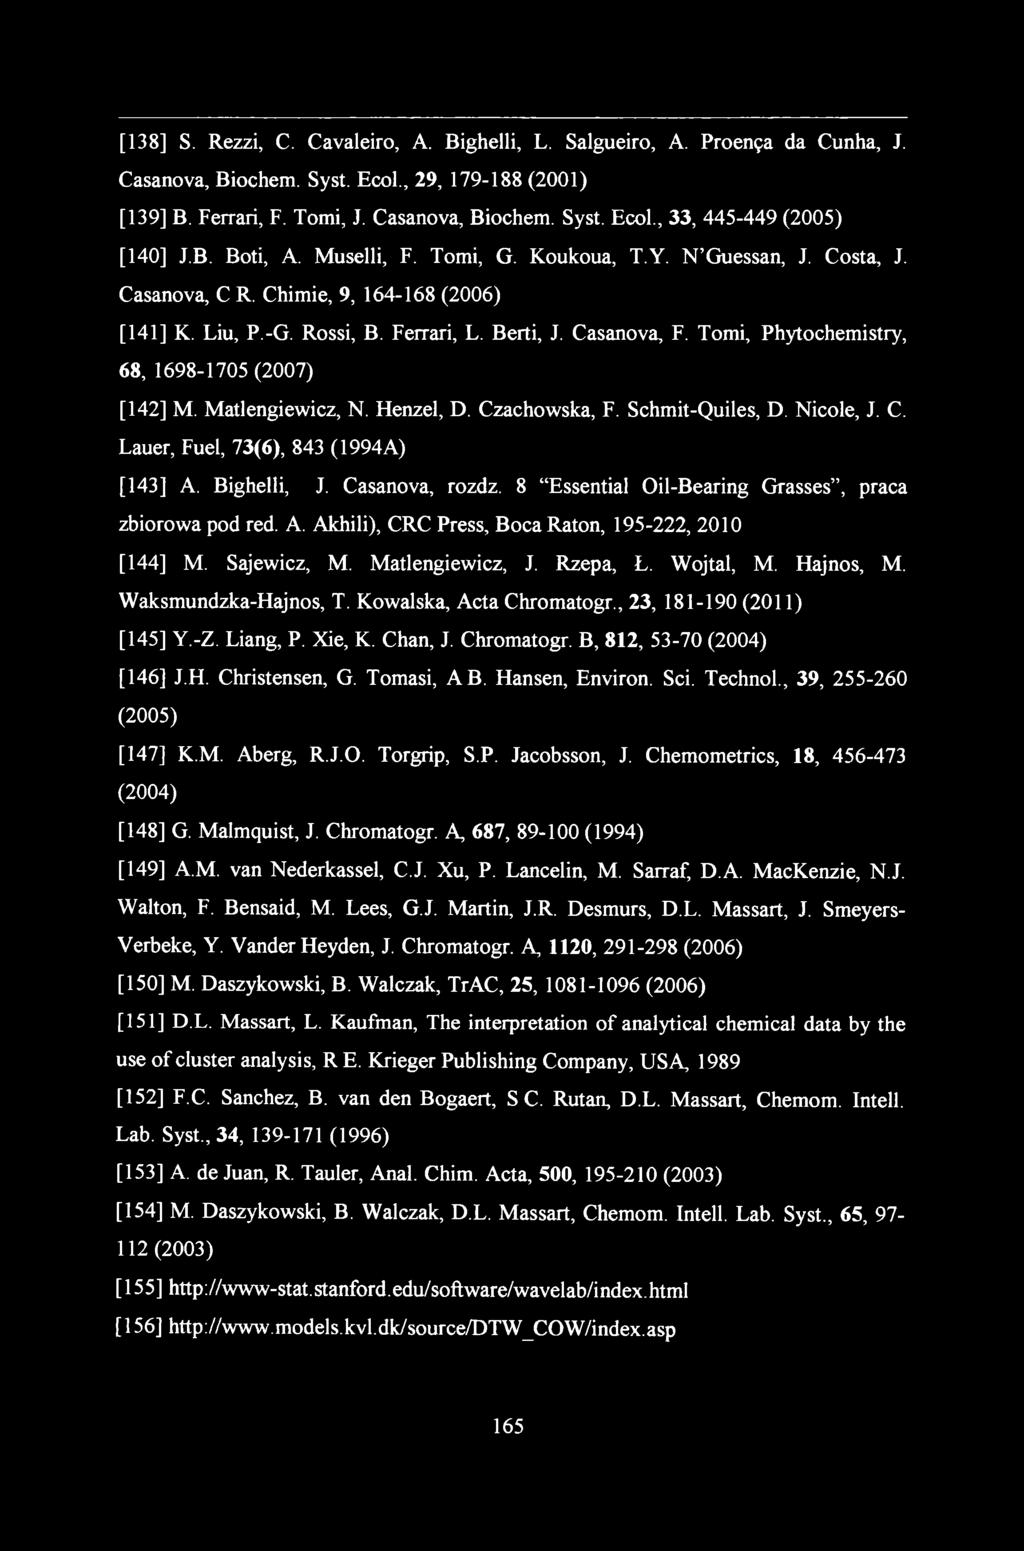 [138] S. Rezzi, C. Cavaleiro, A. Bighelli, L. Salgueiro, A. Proenęa da Cunha, J. Casanova, Biochem. Syst. Ecol., 29, 179-188 (2001) [139] B. Ferrari, F. Tomi, J. Casanova, Biochem. Syst. Ecol., 33, 445-449 (2005) [140] J.